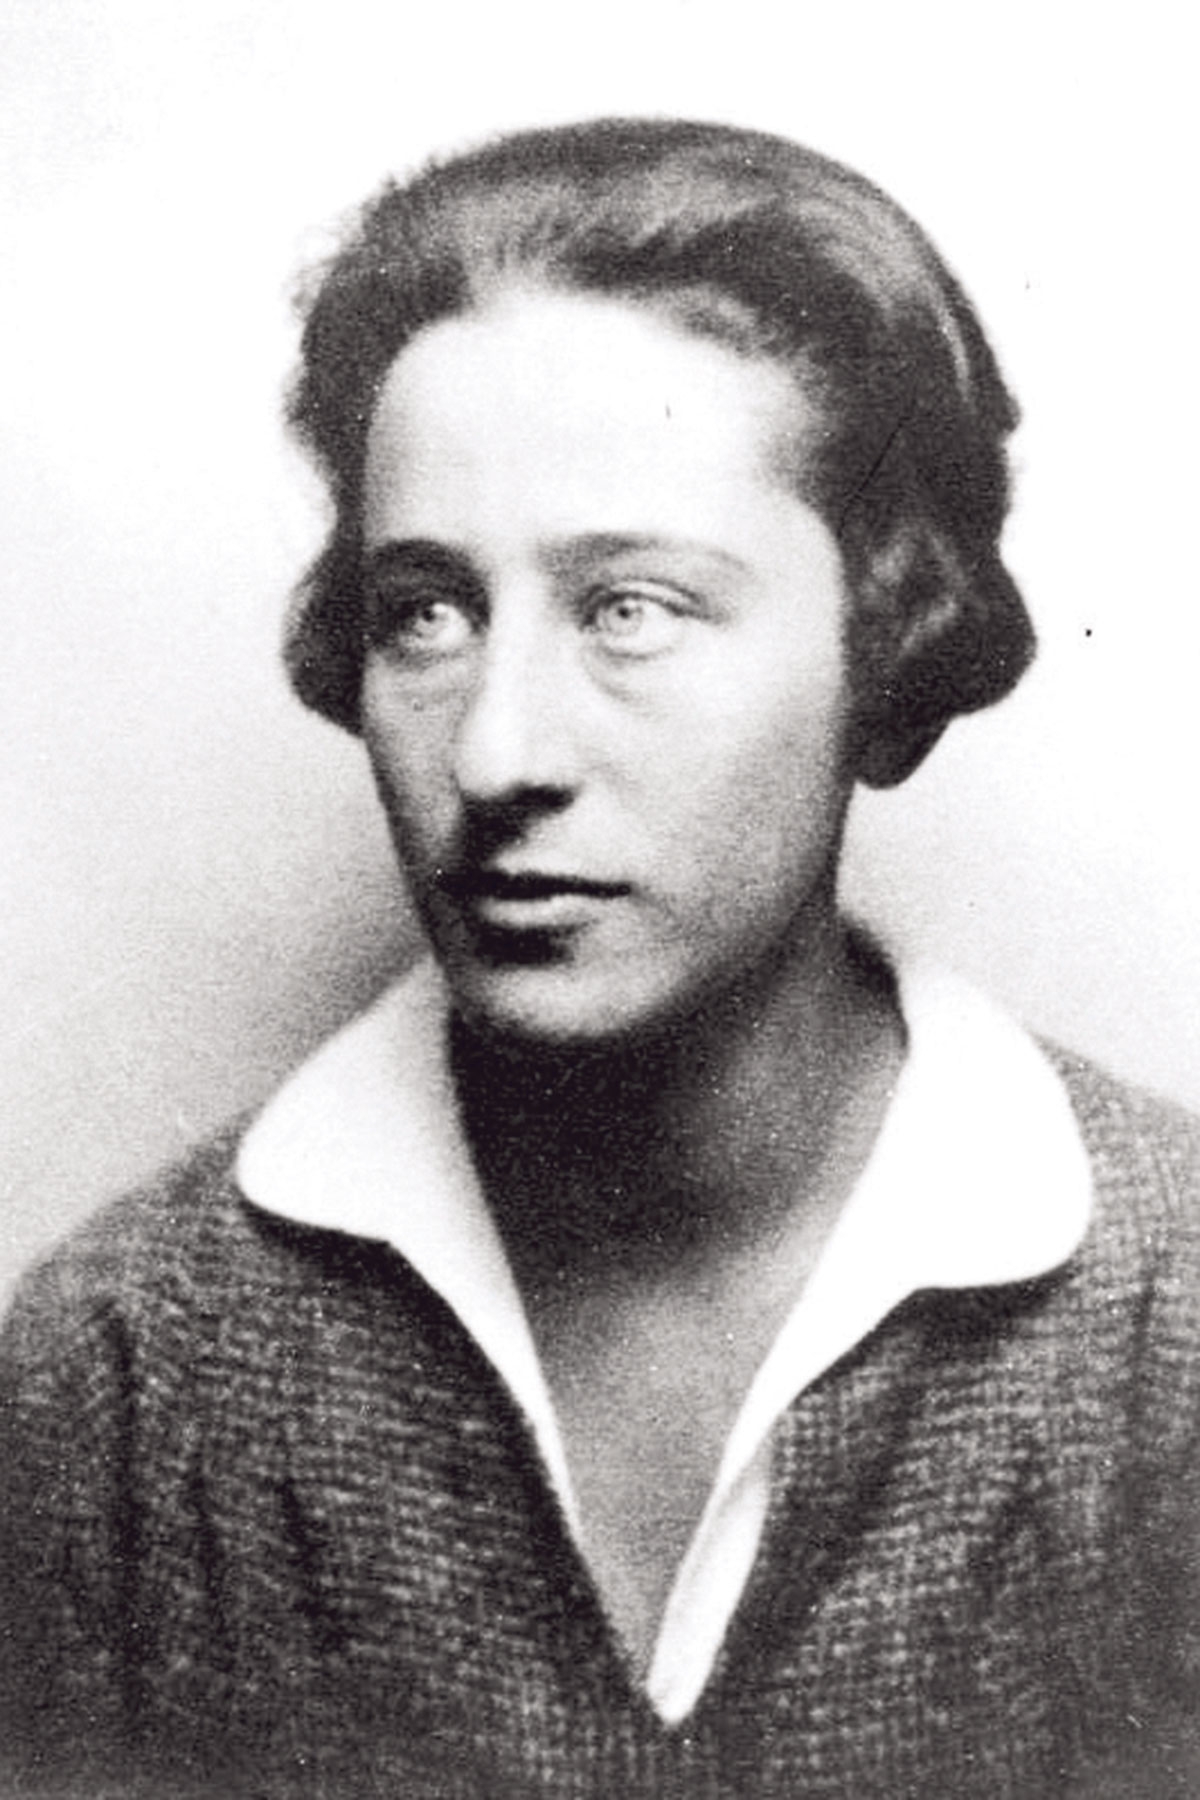 Olga Benario, 1928